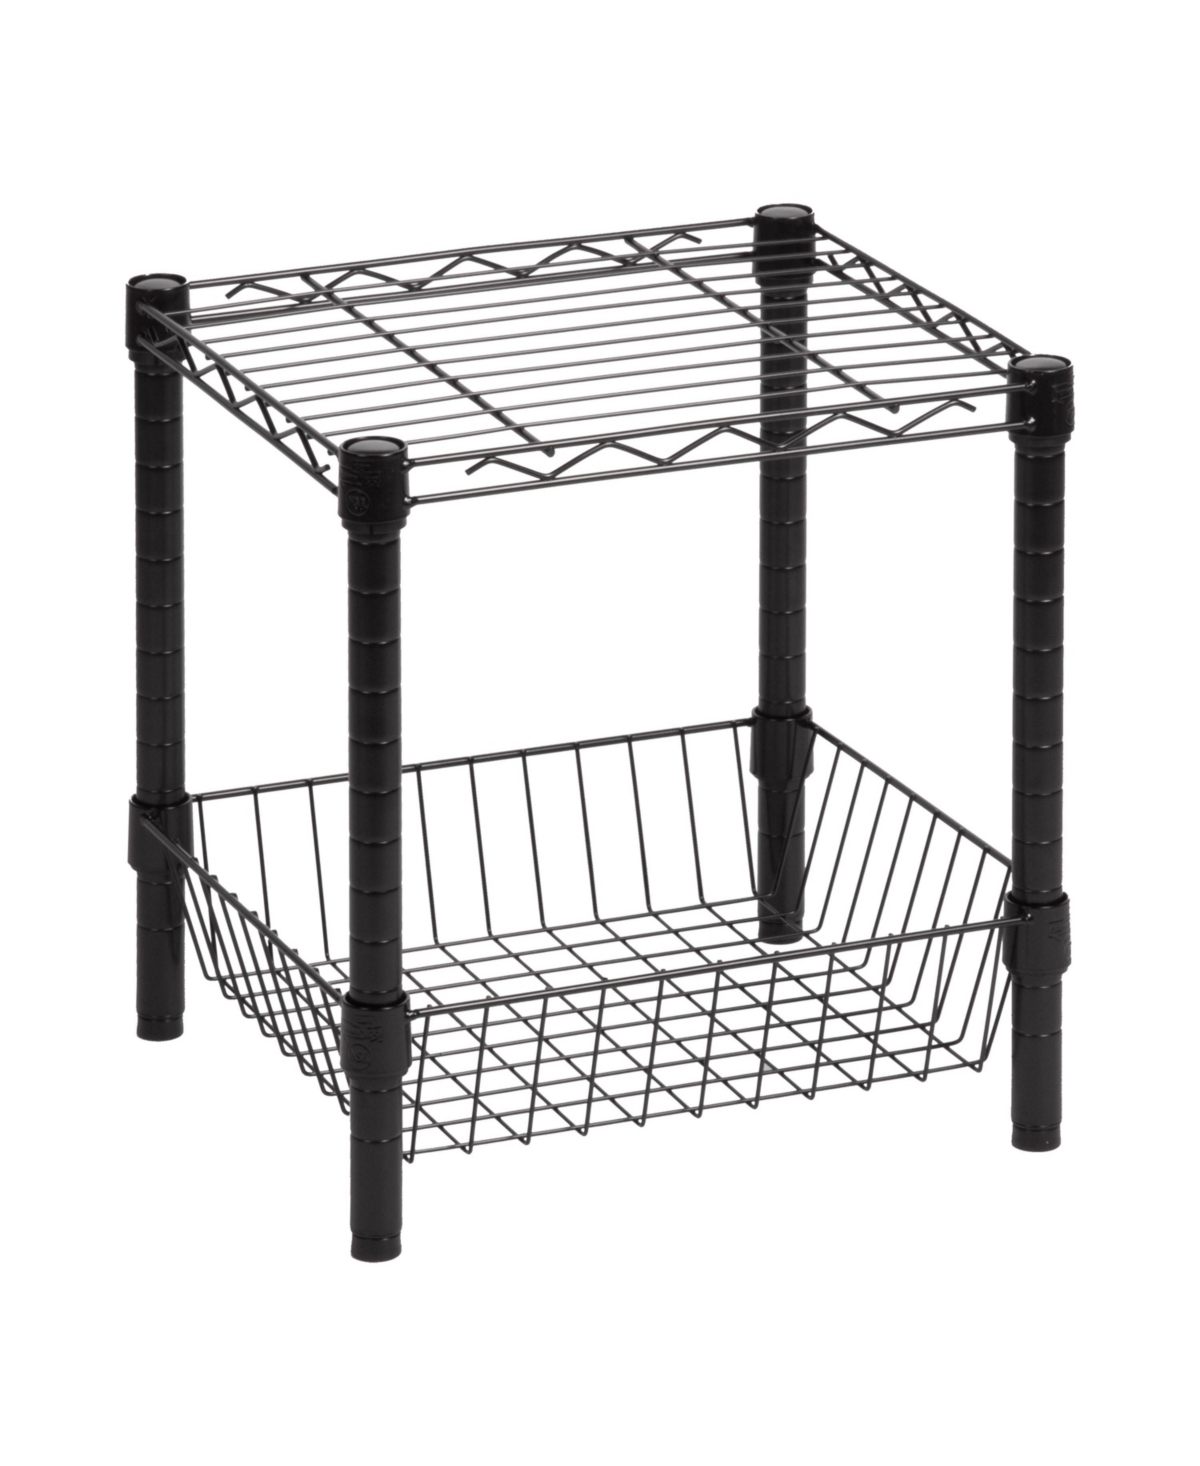 Bottom Storage Basket with Wire Shelf - Black